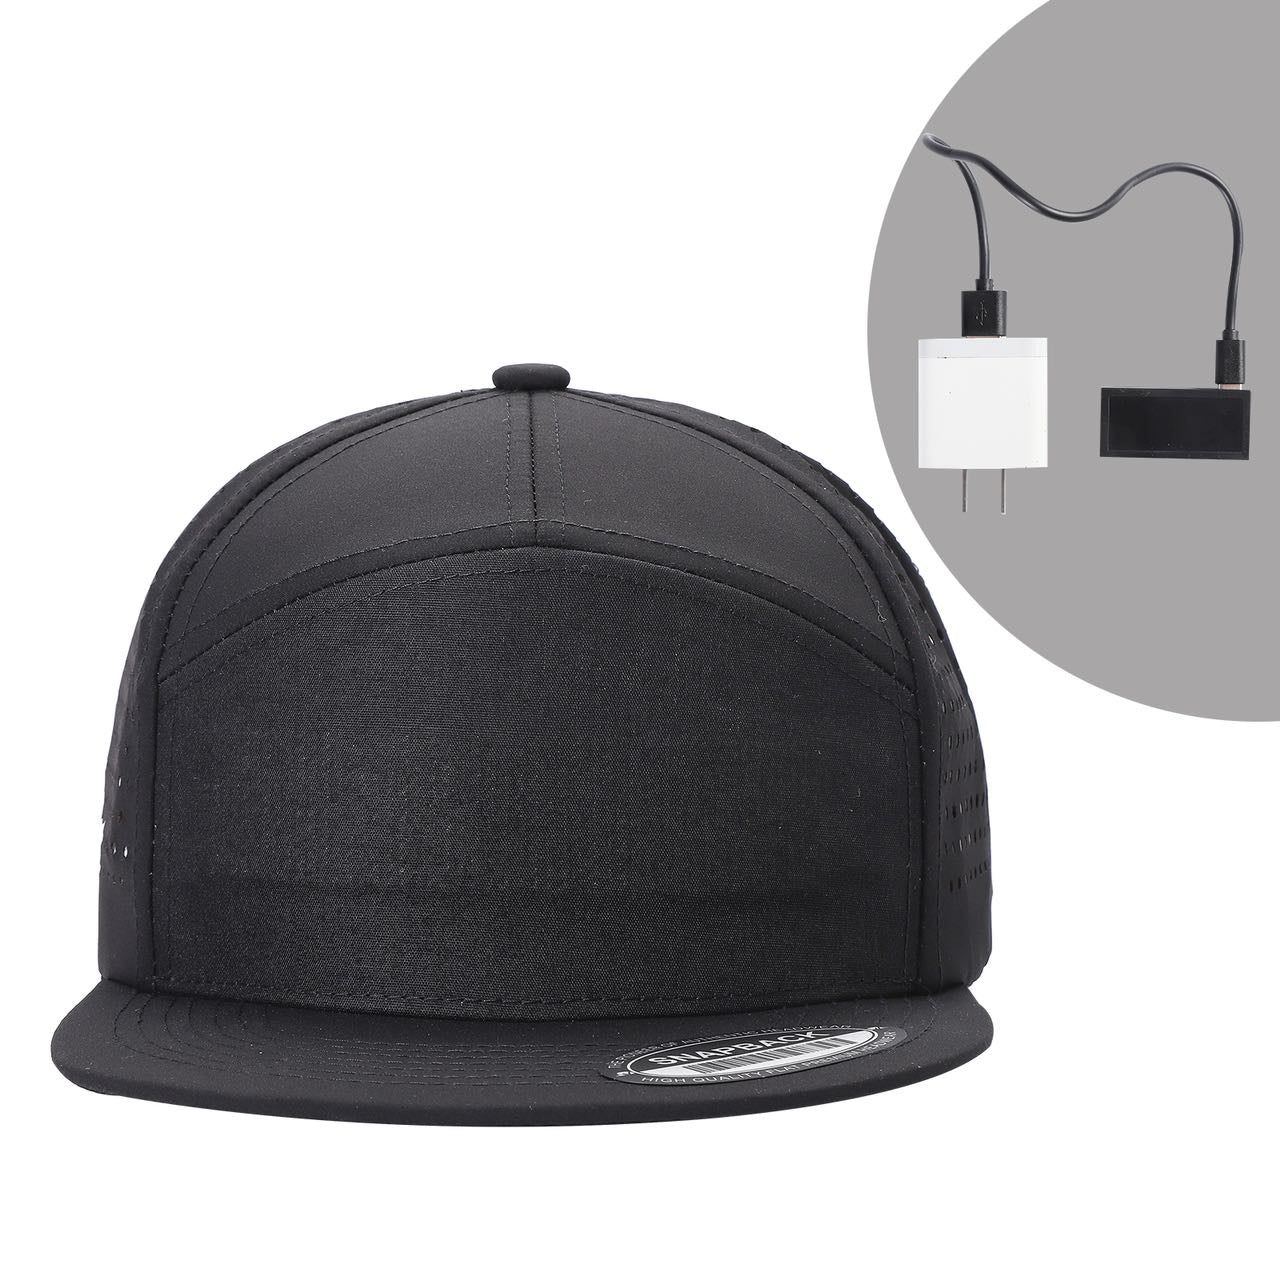 LED Hat - $20/PIECE